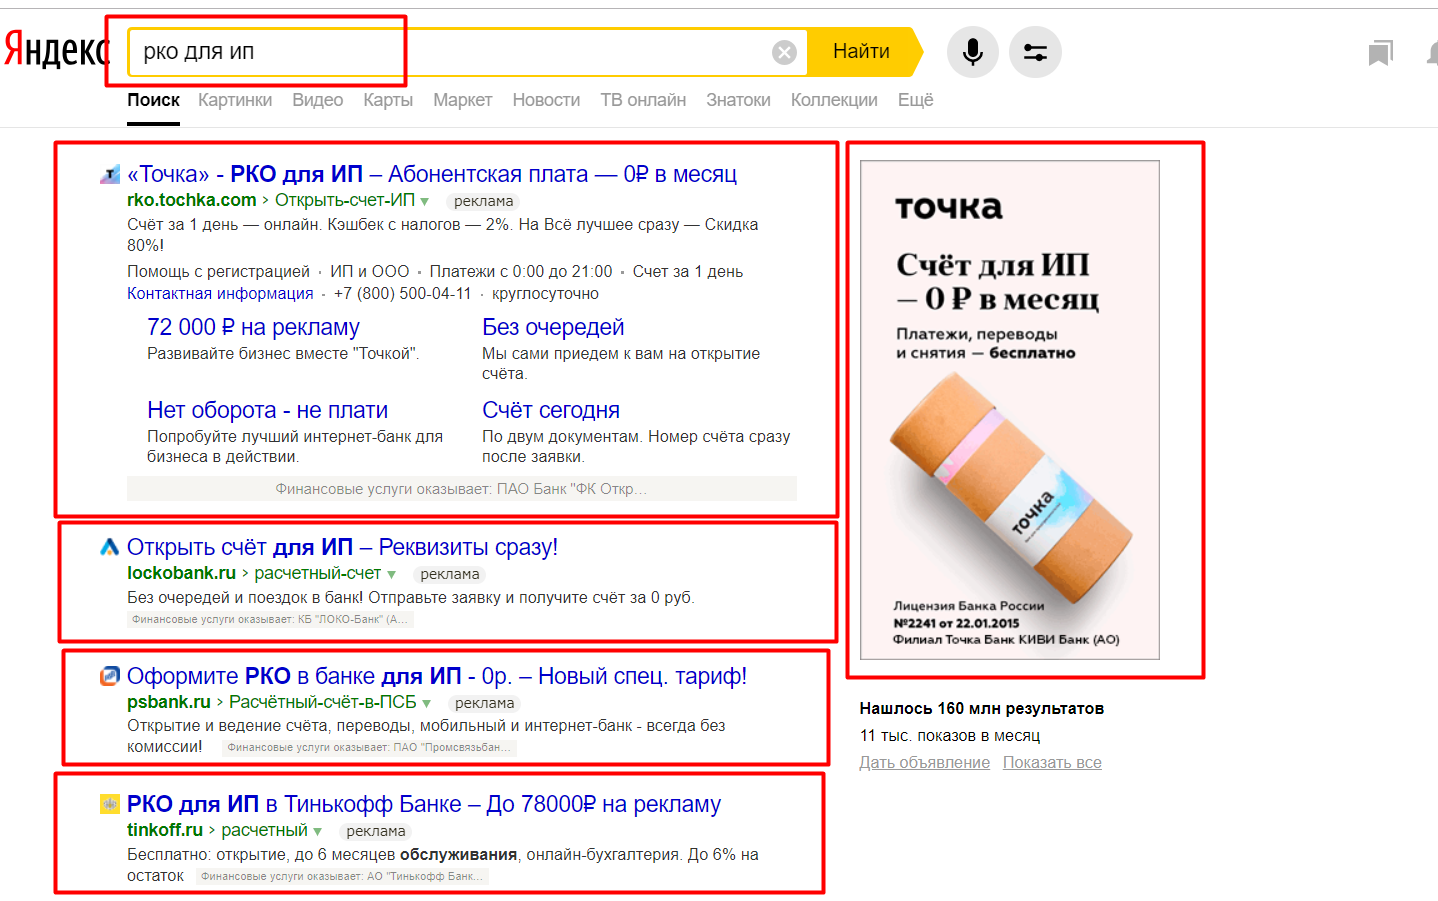 Пример рекламной выдачи в Яндексе по одному из запросов, касающихся РКО